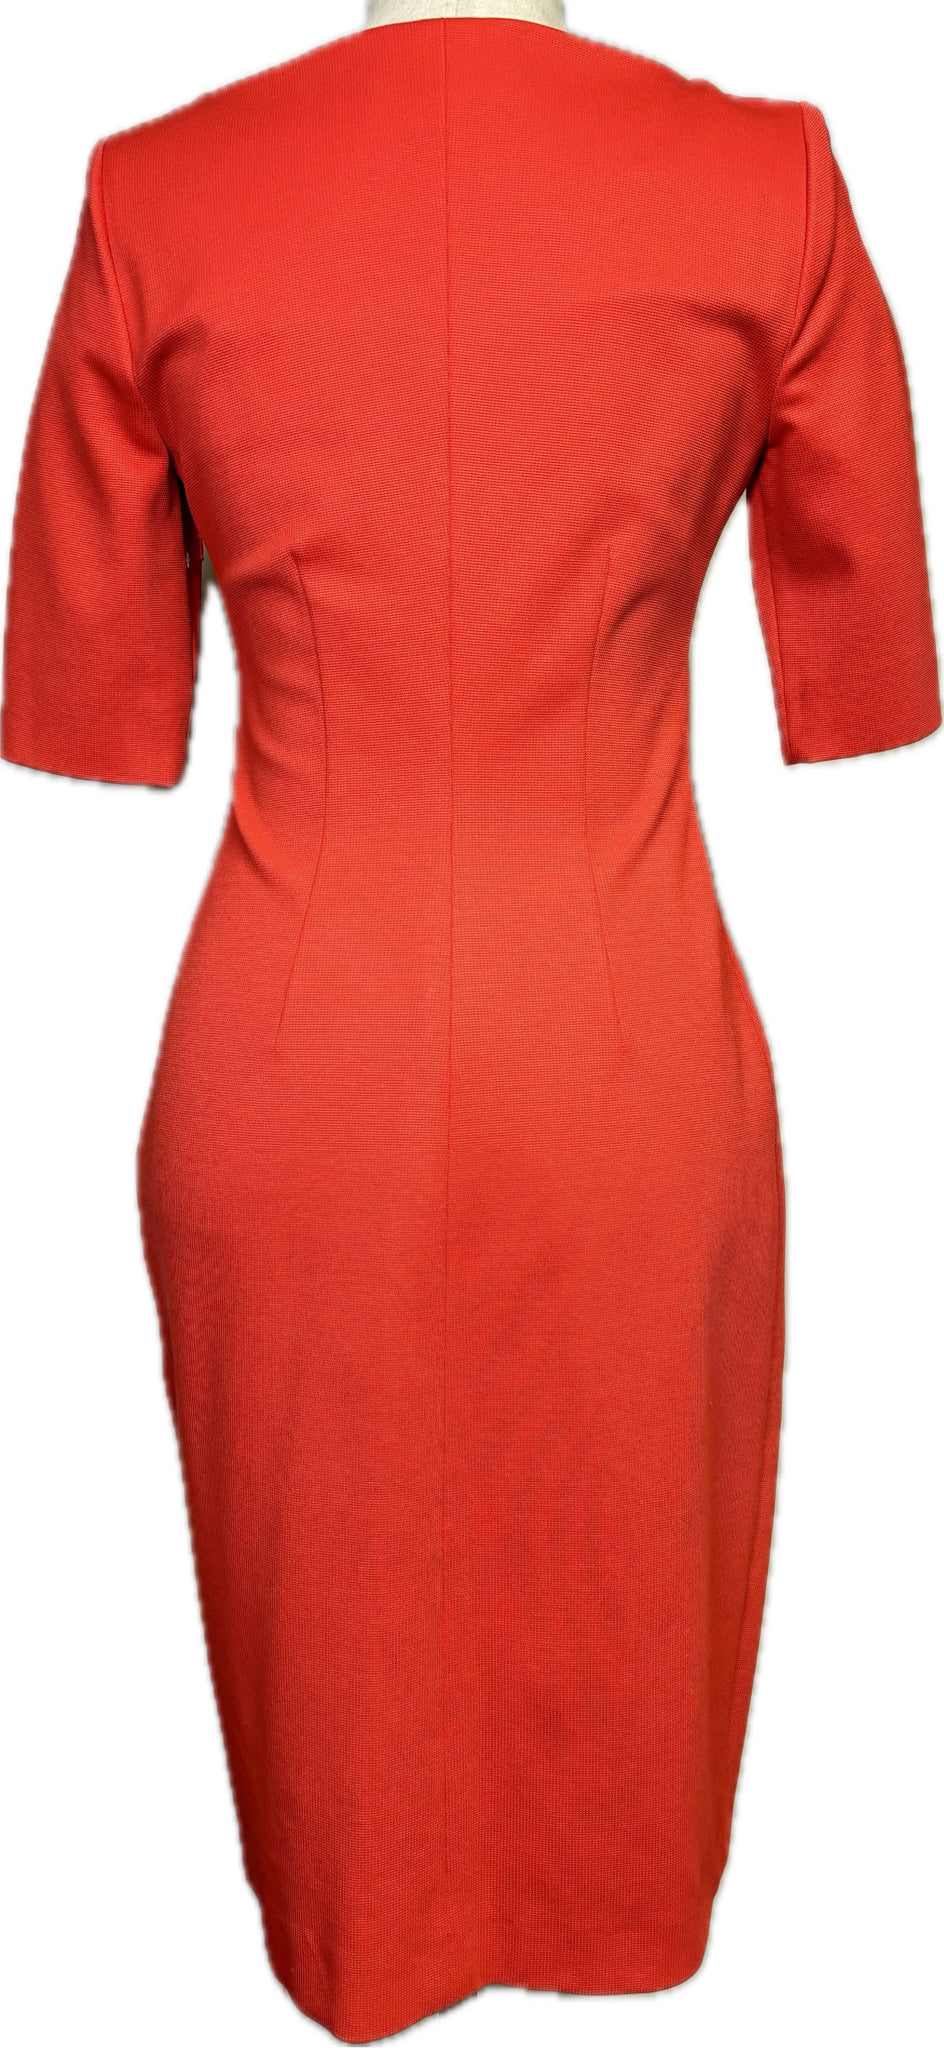 L.K. Bennett Red Dress